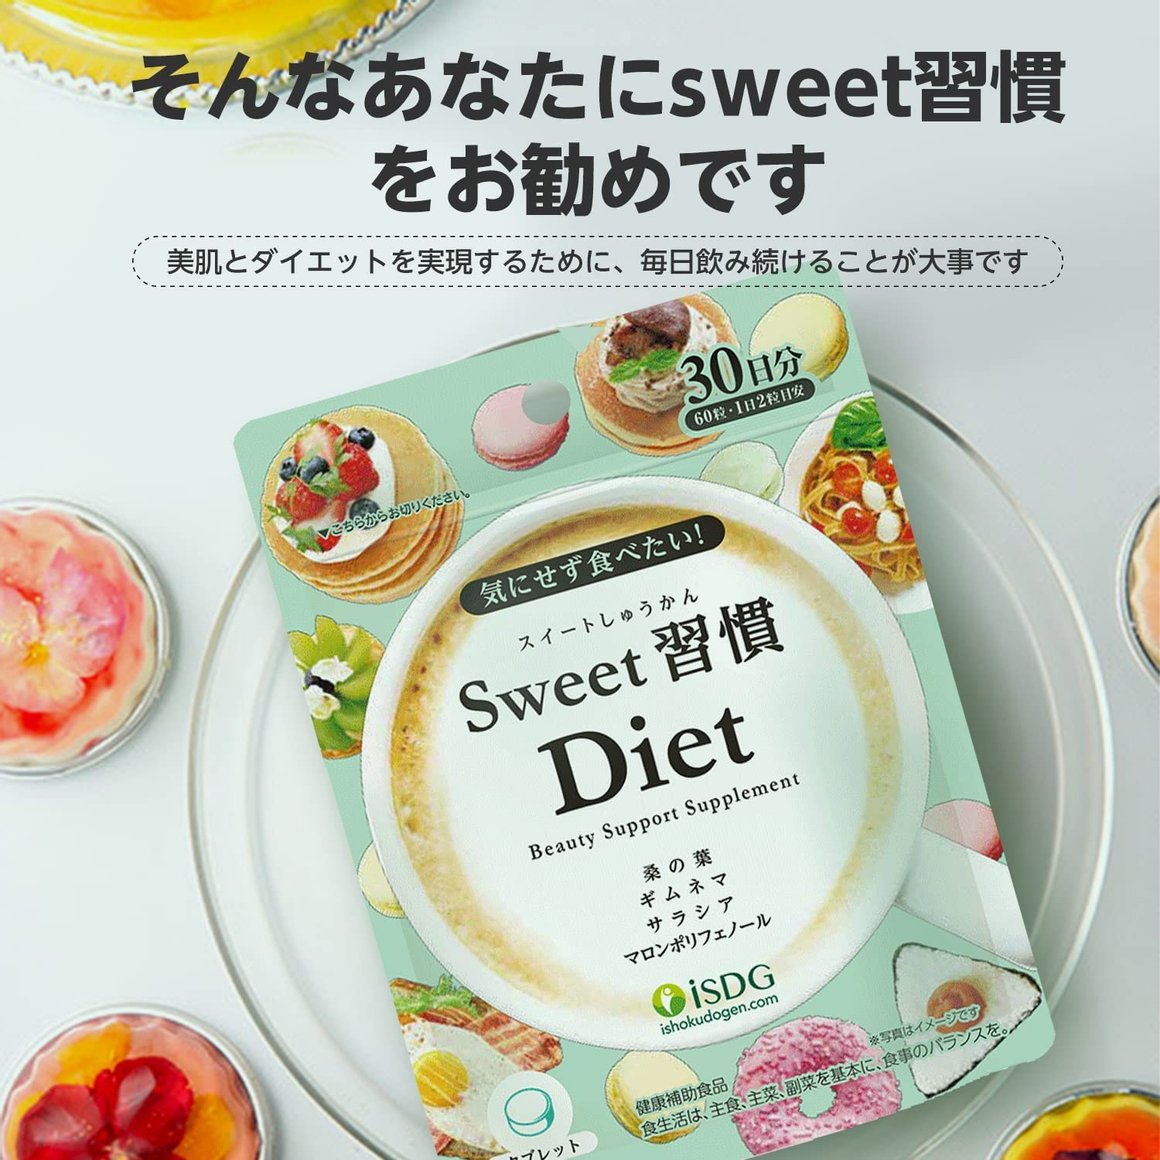 ISDG 醫食同源 Sweet習慣 Diet 抗糖減肥丸 60粒商品描述